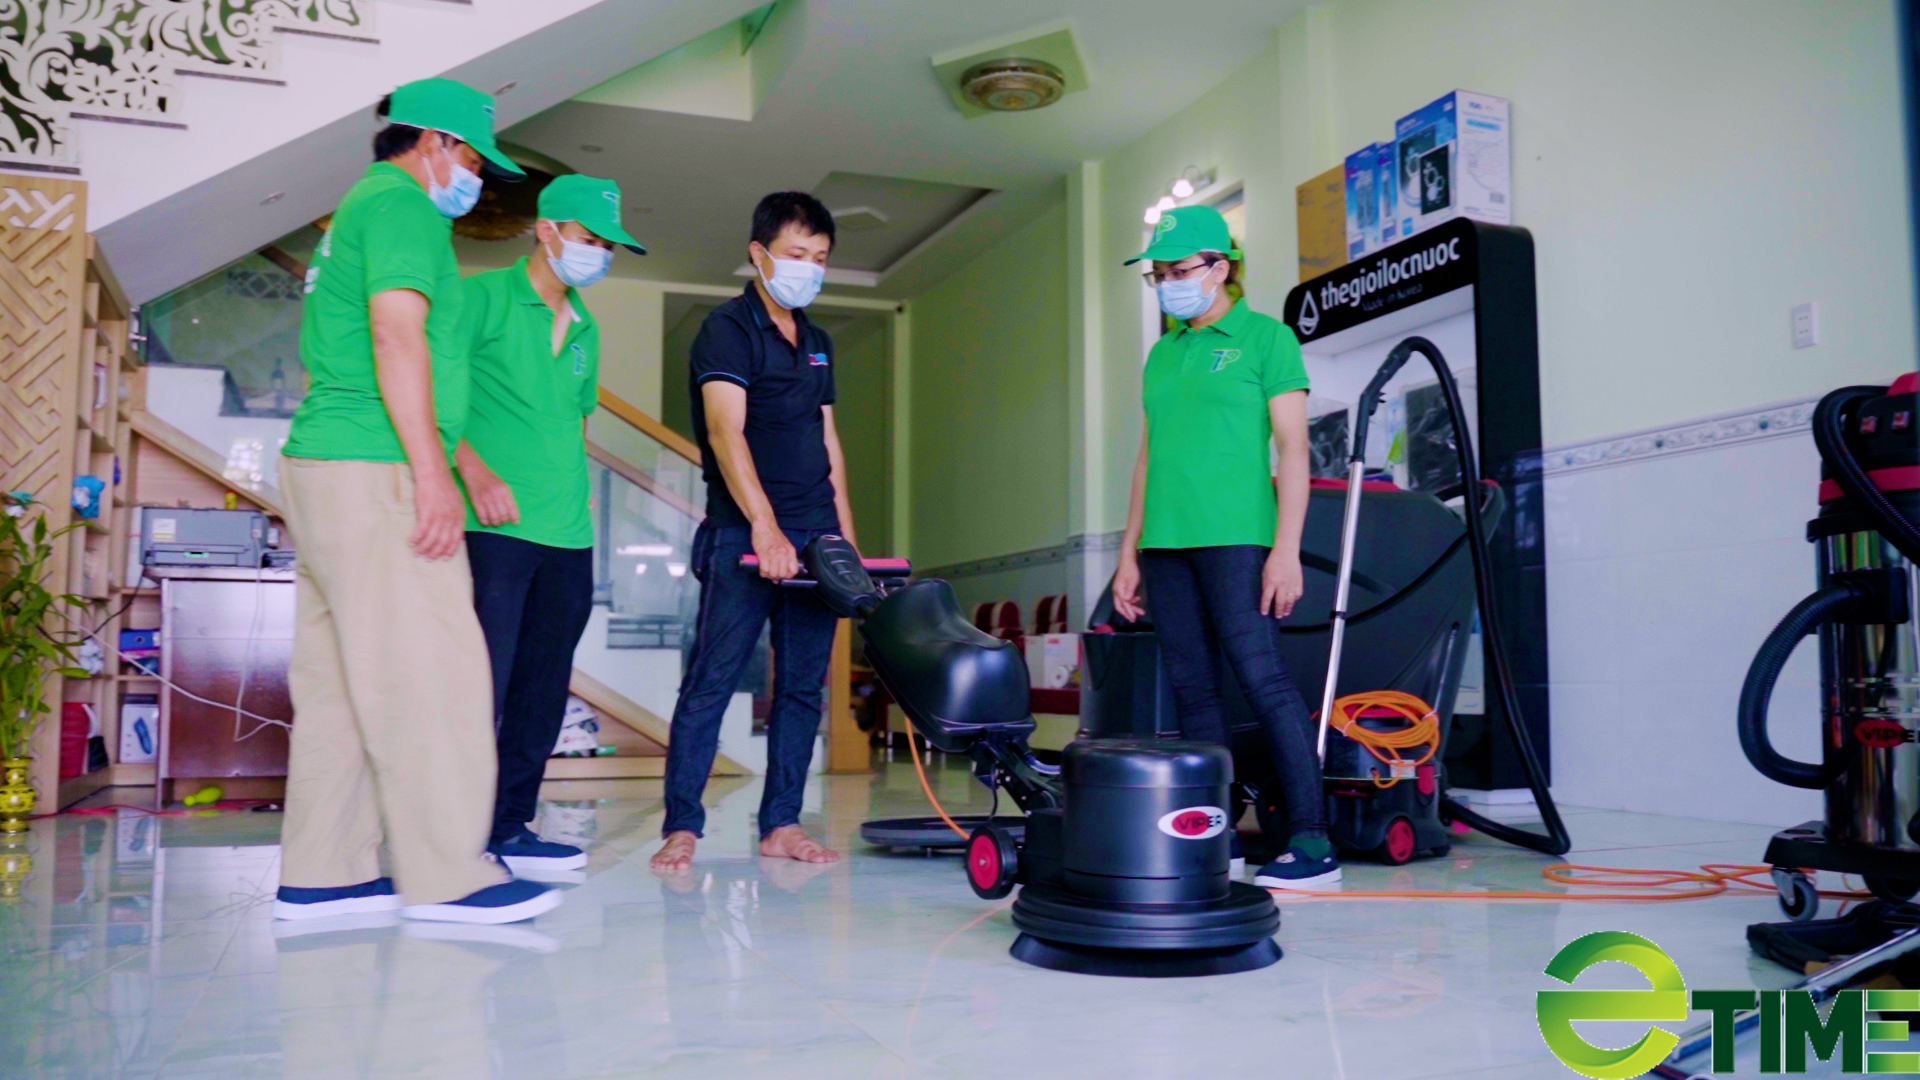 Quảng Nam: Ra mắt doanh nghiệp làm sạch, làm đẹp phục vụ các nhà máy - Ảnh 1.